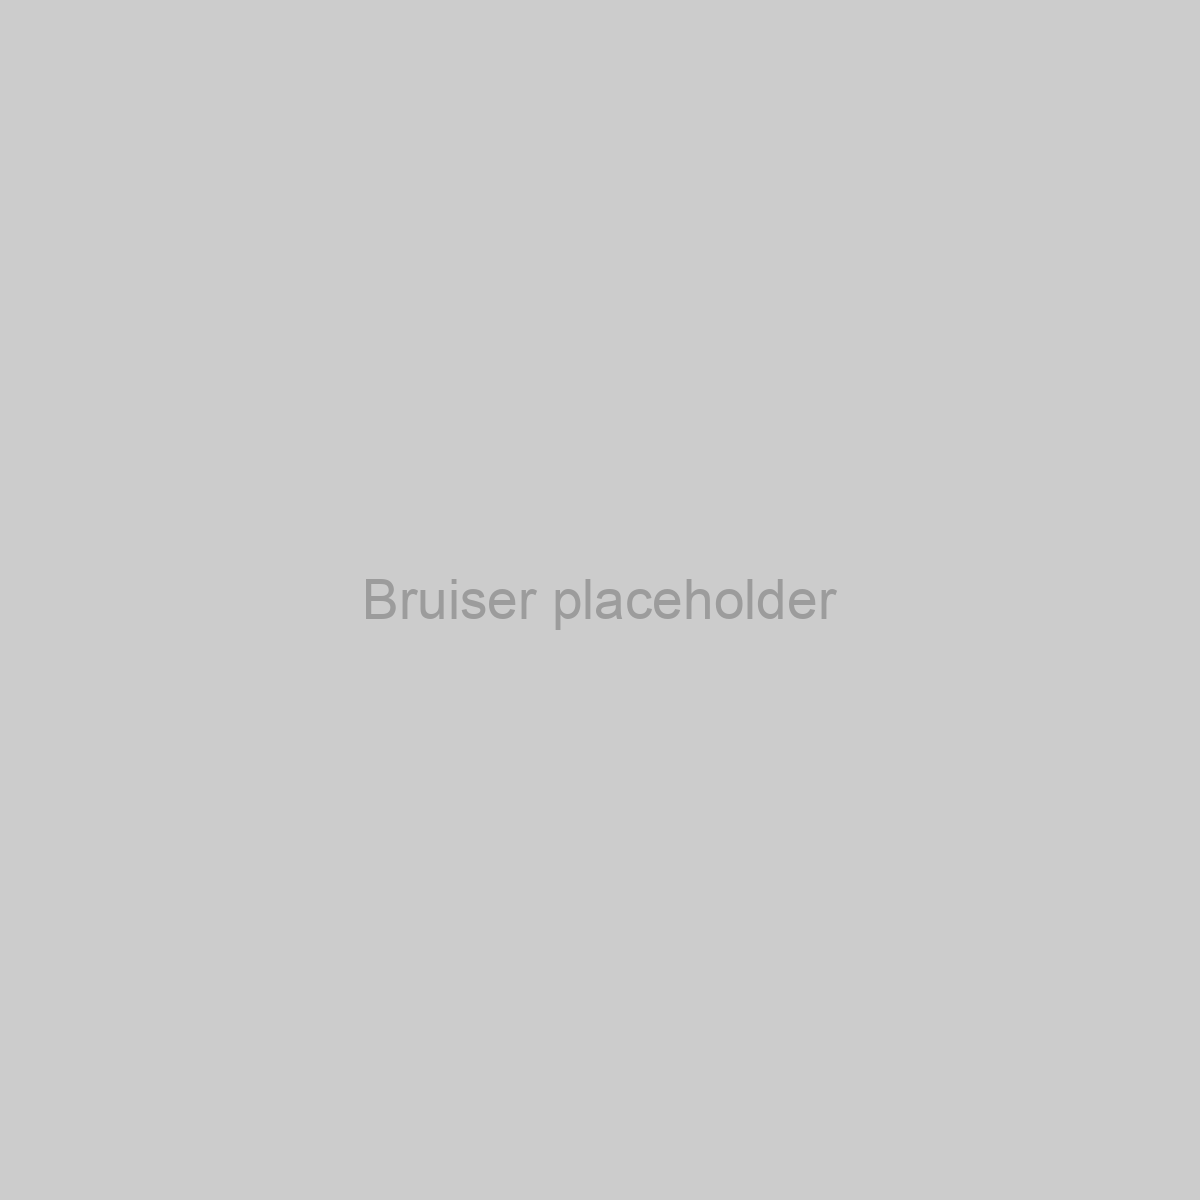 Bruiser Placeholder Image